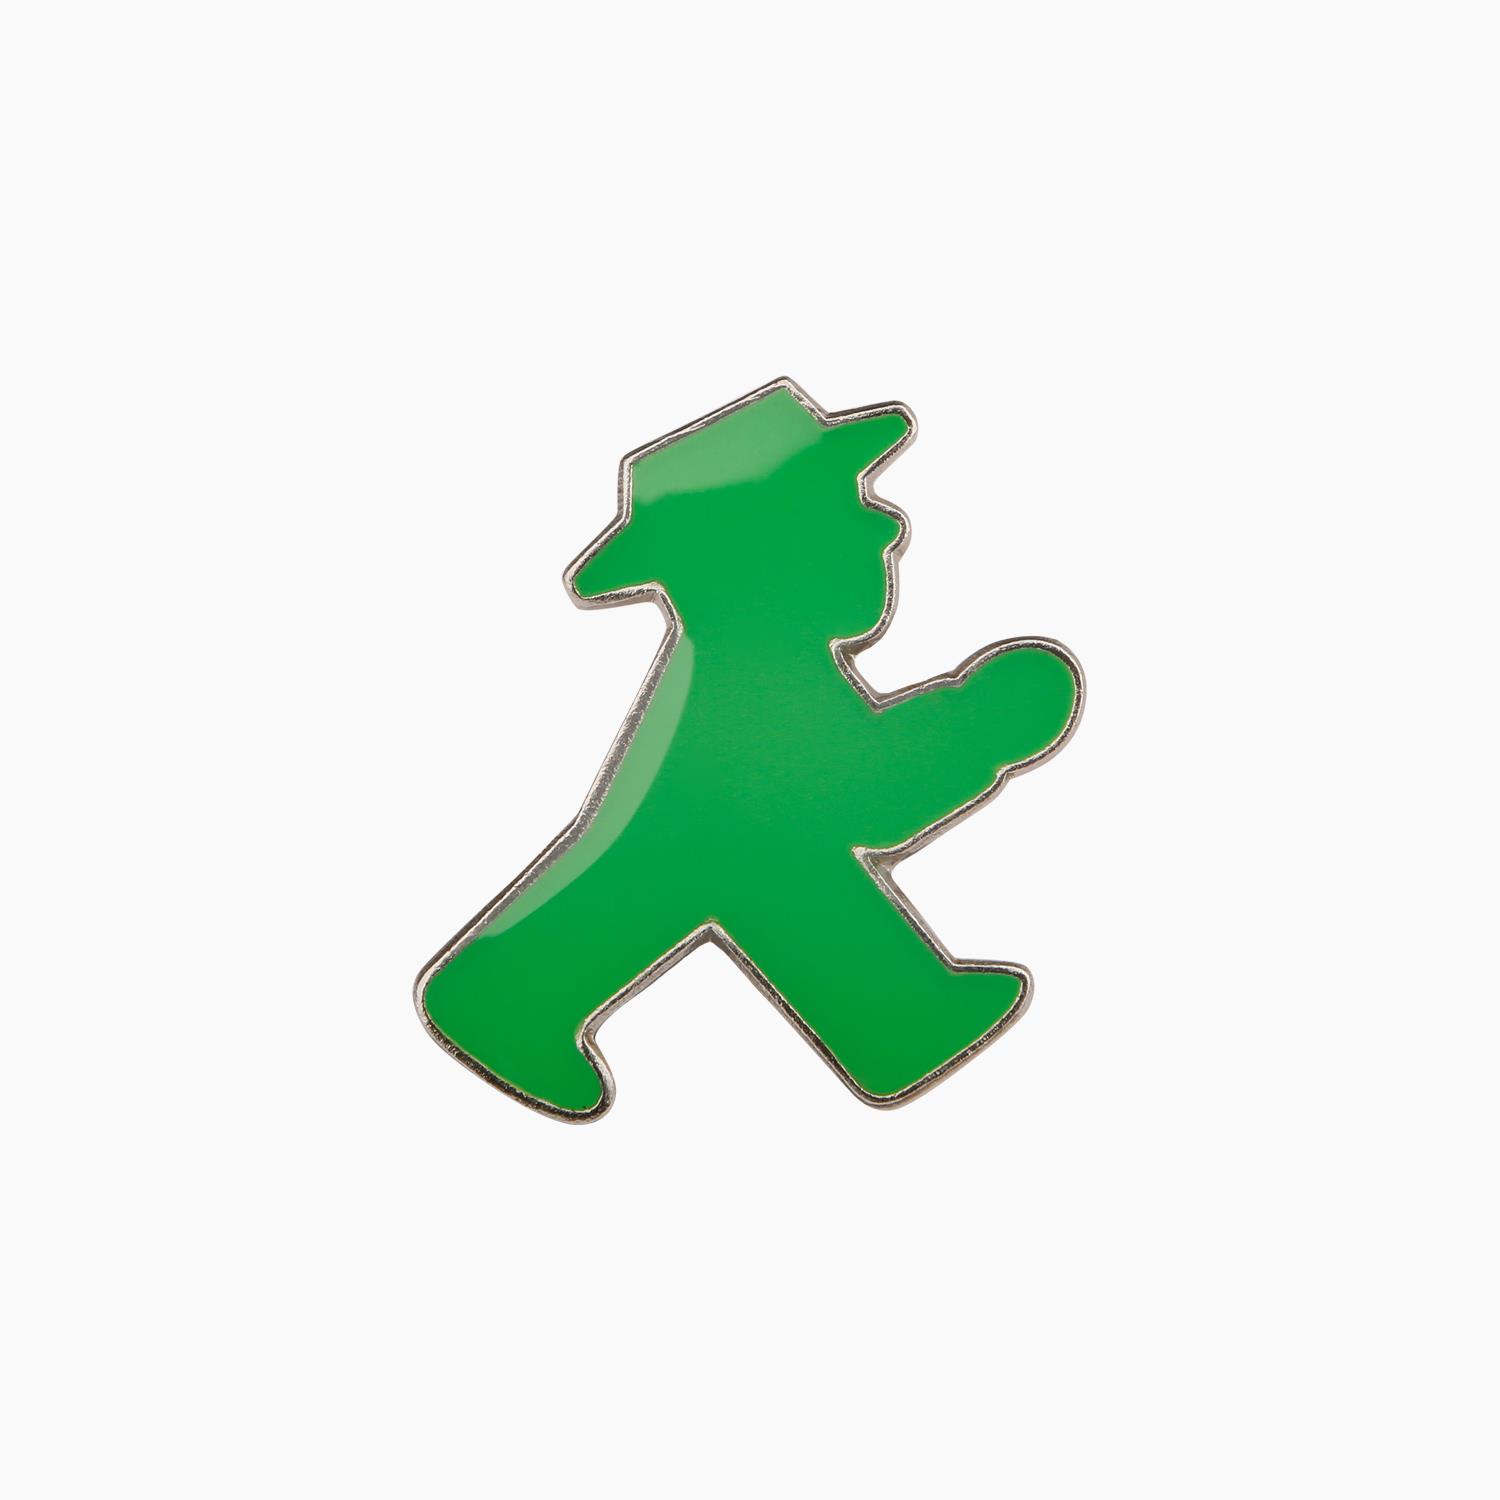 ANSTECKER Green/ Pin